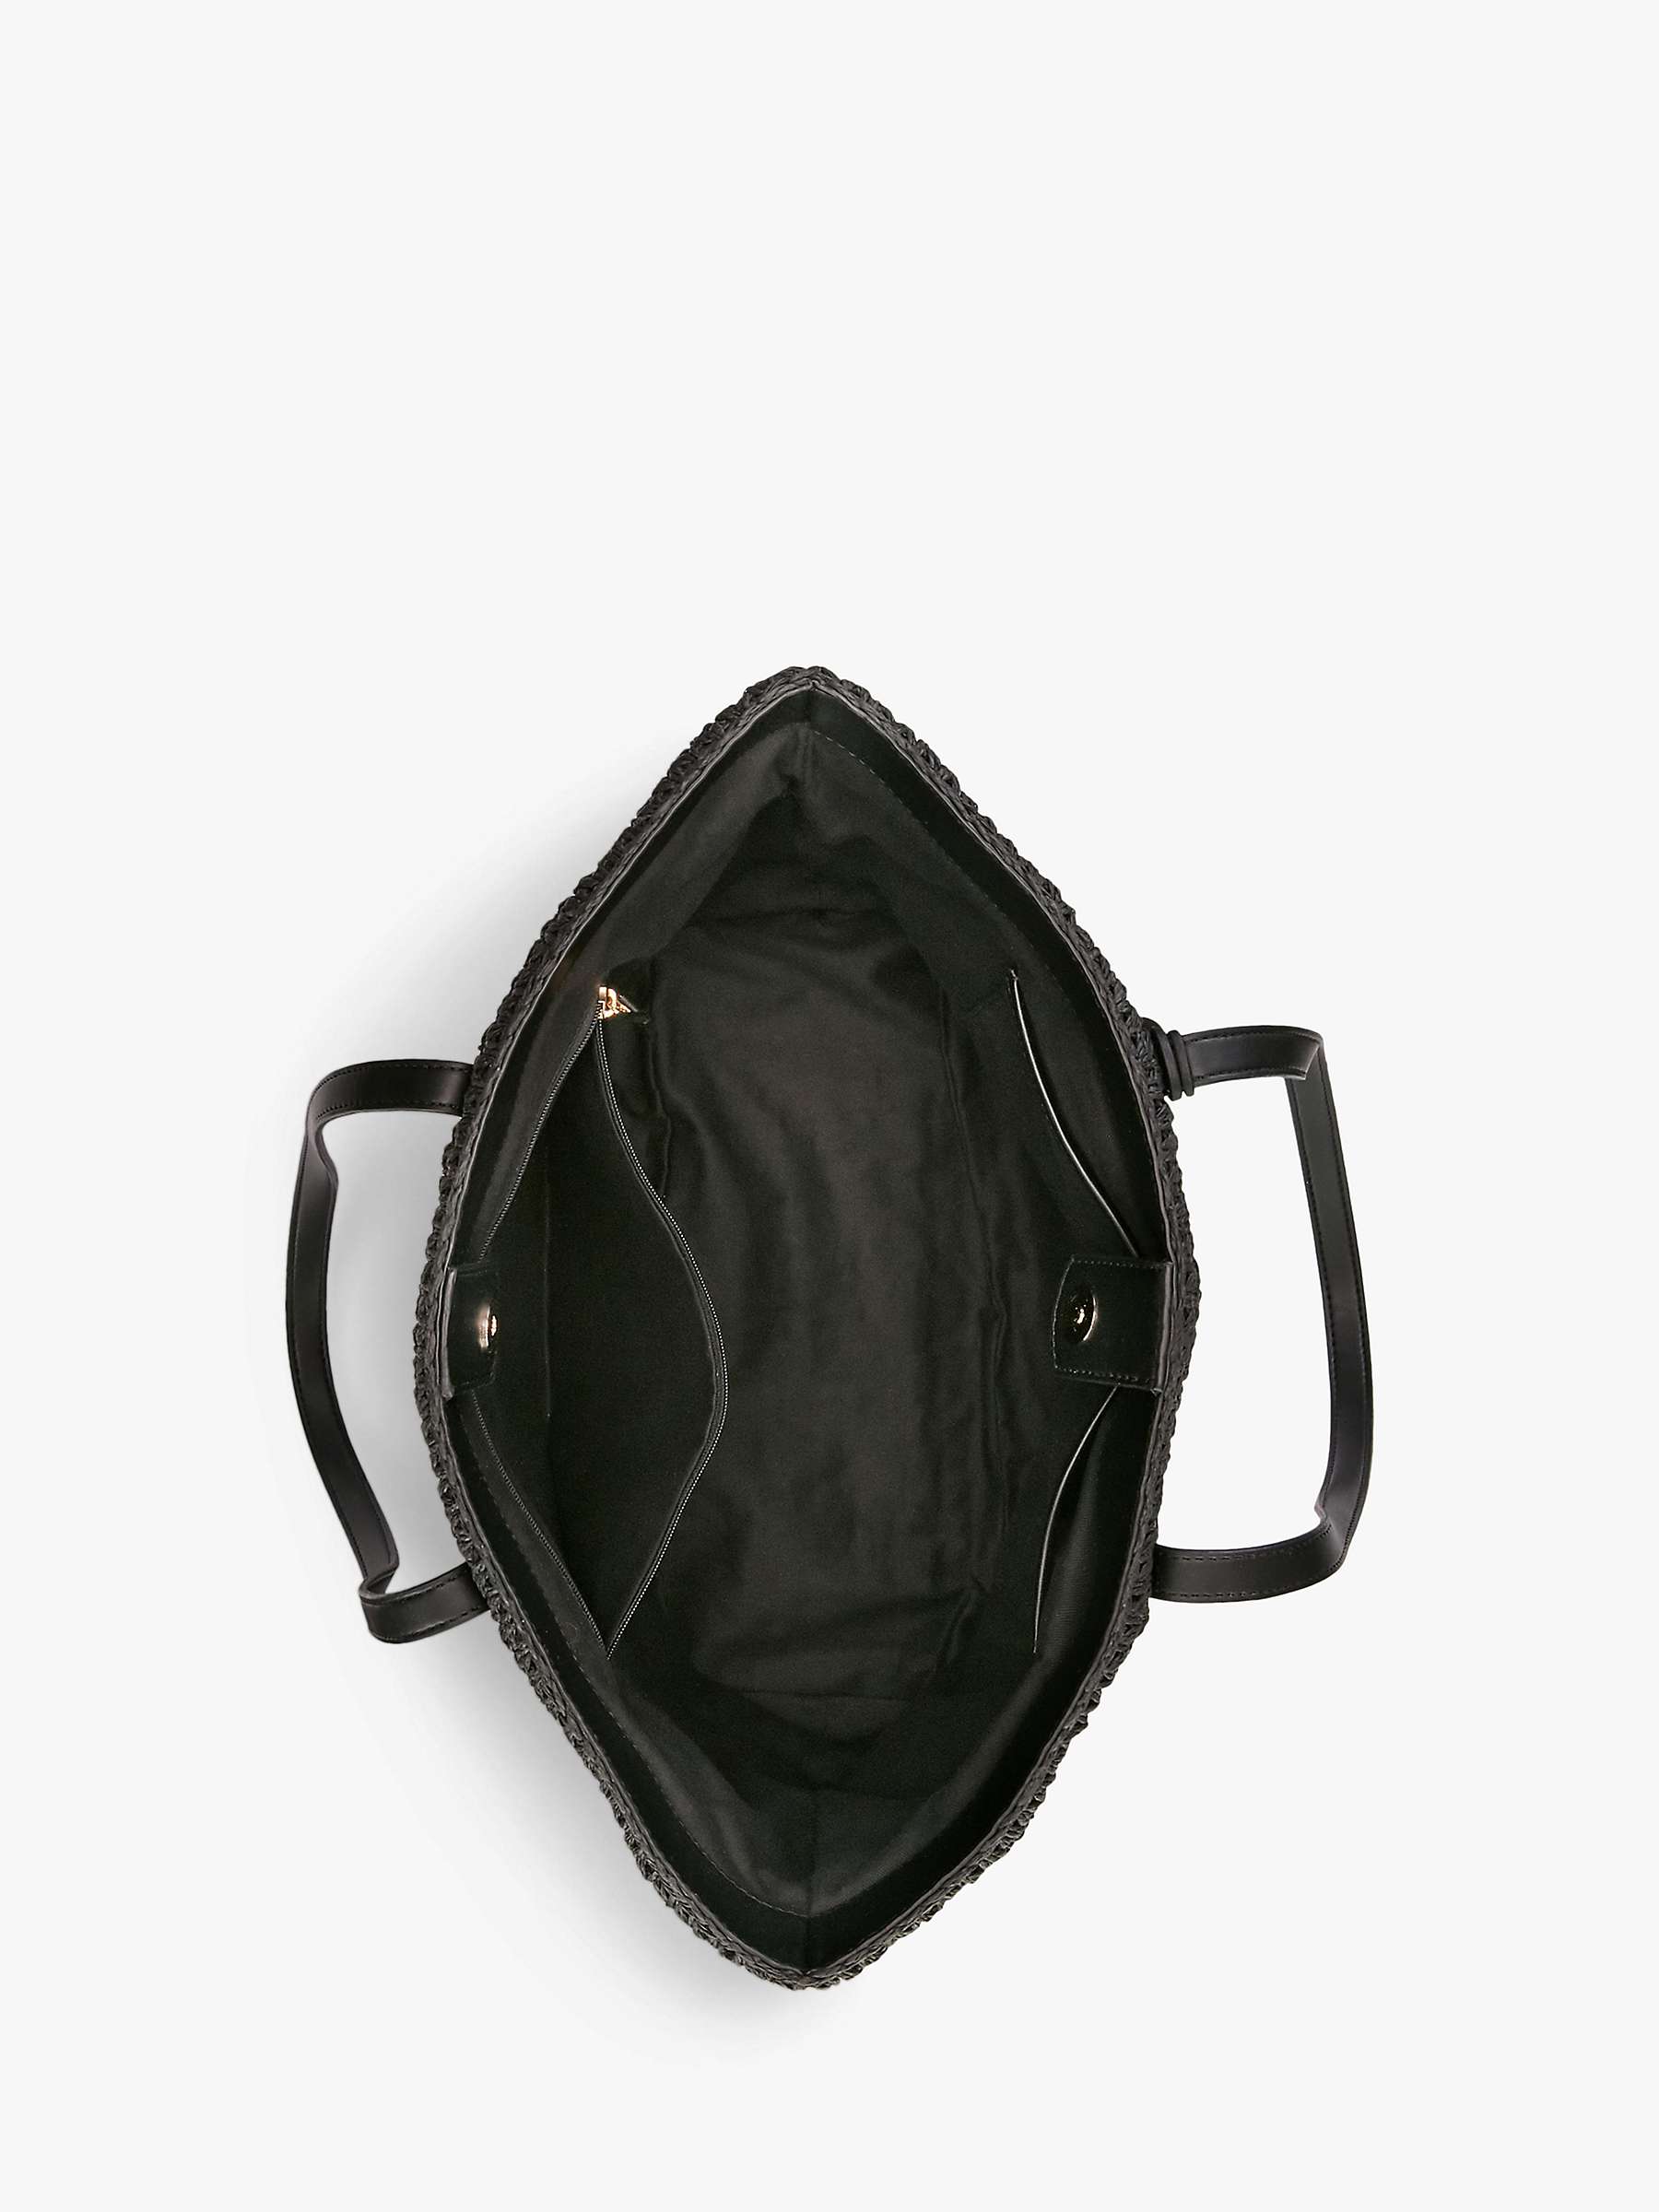 Buy Lauren Ralph Lauren Straw Tote Bag, Black Online at johnlewis.com